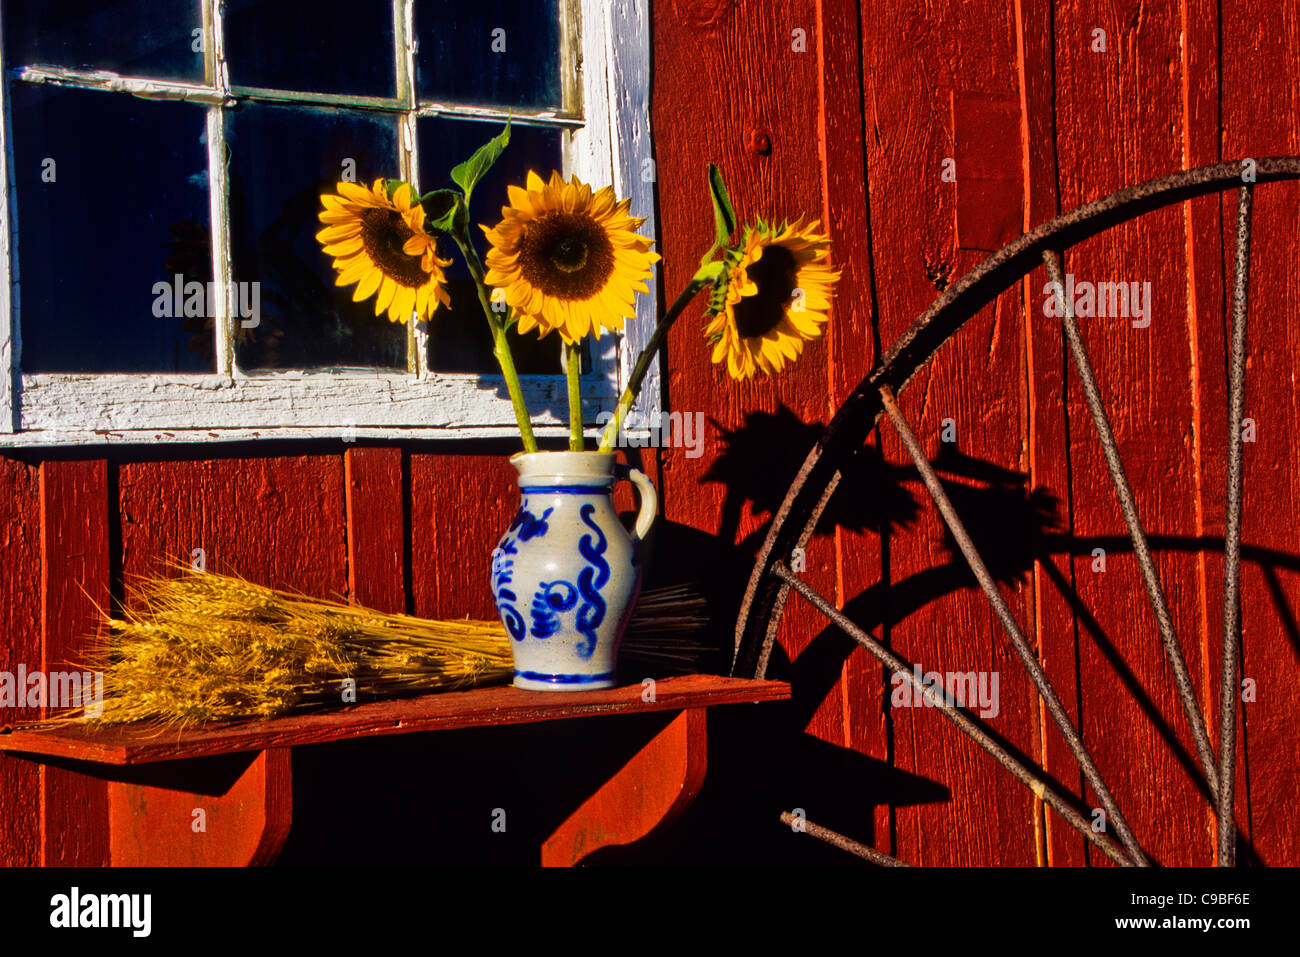 Herbstgartenblumen, Sonnenblumenstrauß in einem Tonkrug, rote Scheune Gartenschuppen Landwirtschaft Heurake Rad und Weizen, Monroe Twp., New Jersey, USA, USA Stockfoto